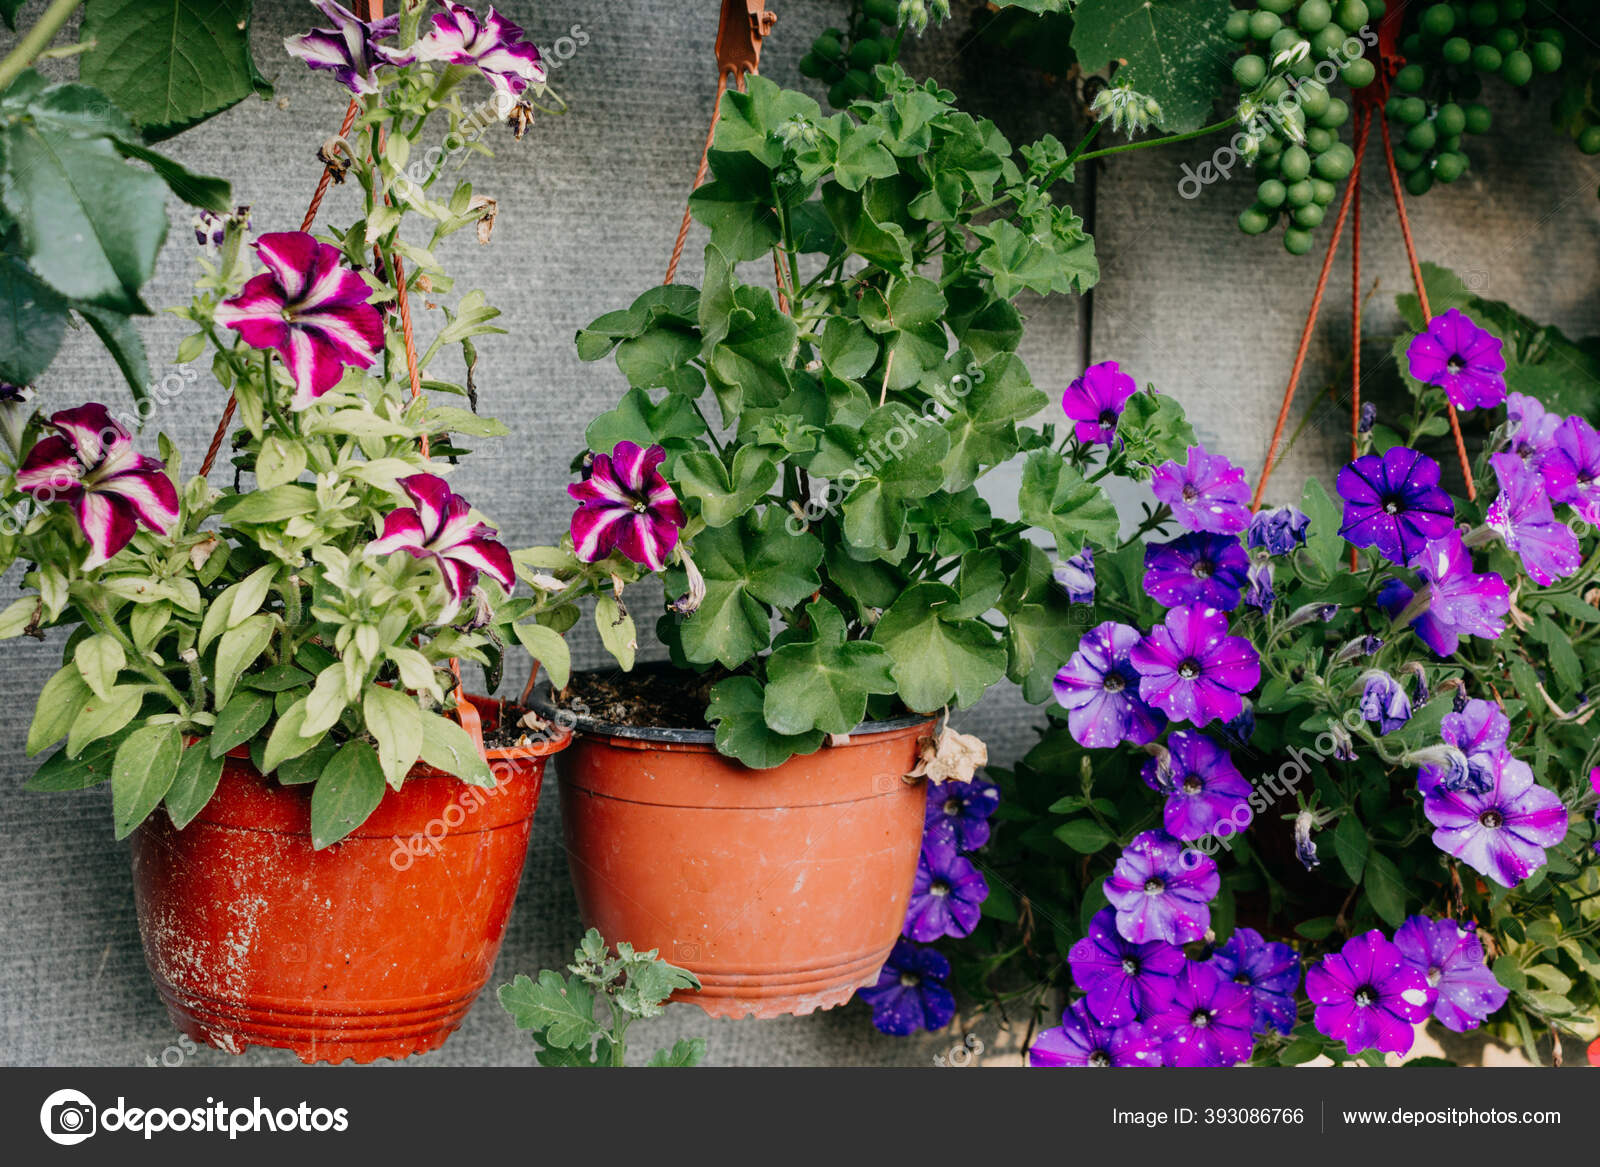 semanal juego escaldadura Cultivando Flores Macetas Colgando Macetas Aire Libre Petunias Geranios  Floración: fotografía de stock © nadia@ #393086766 | Depositphotos